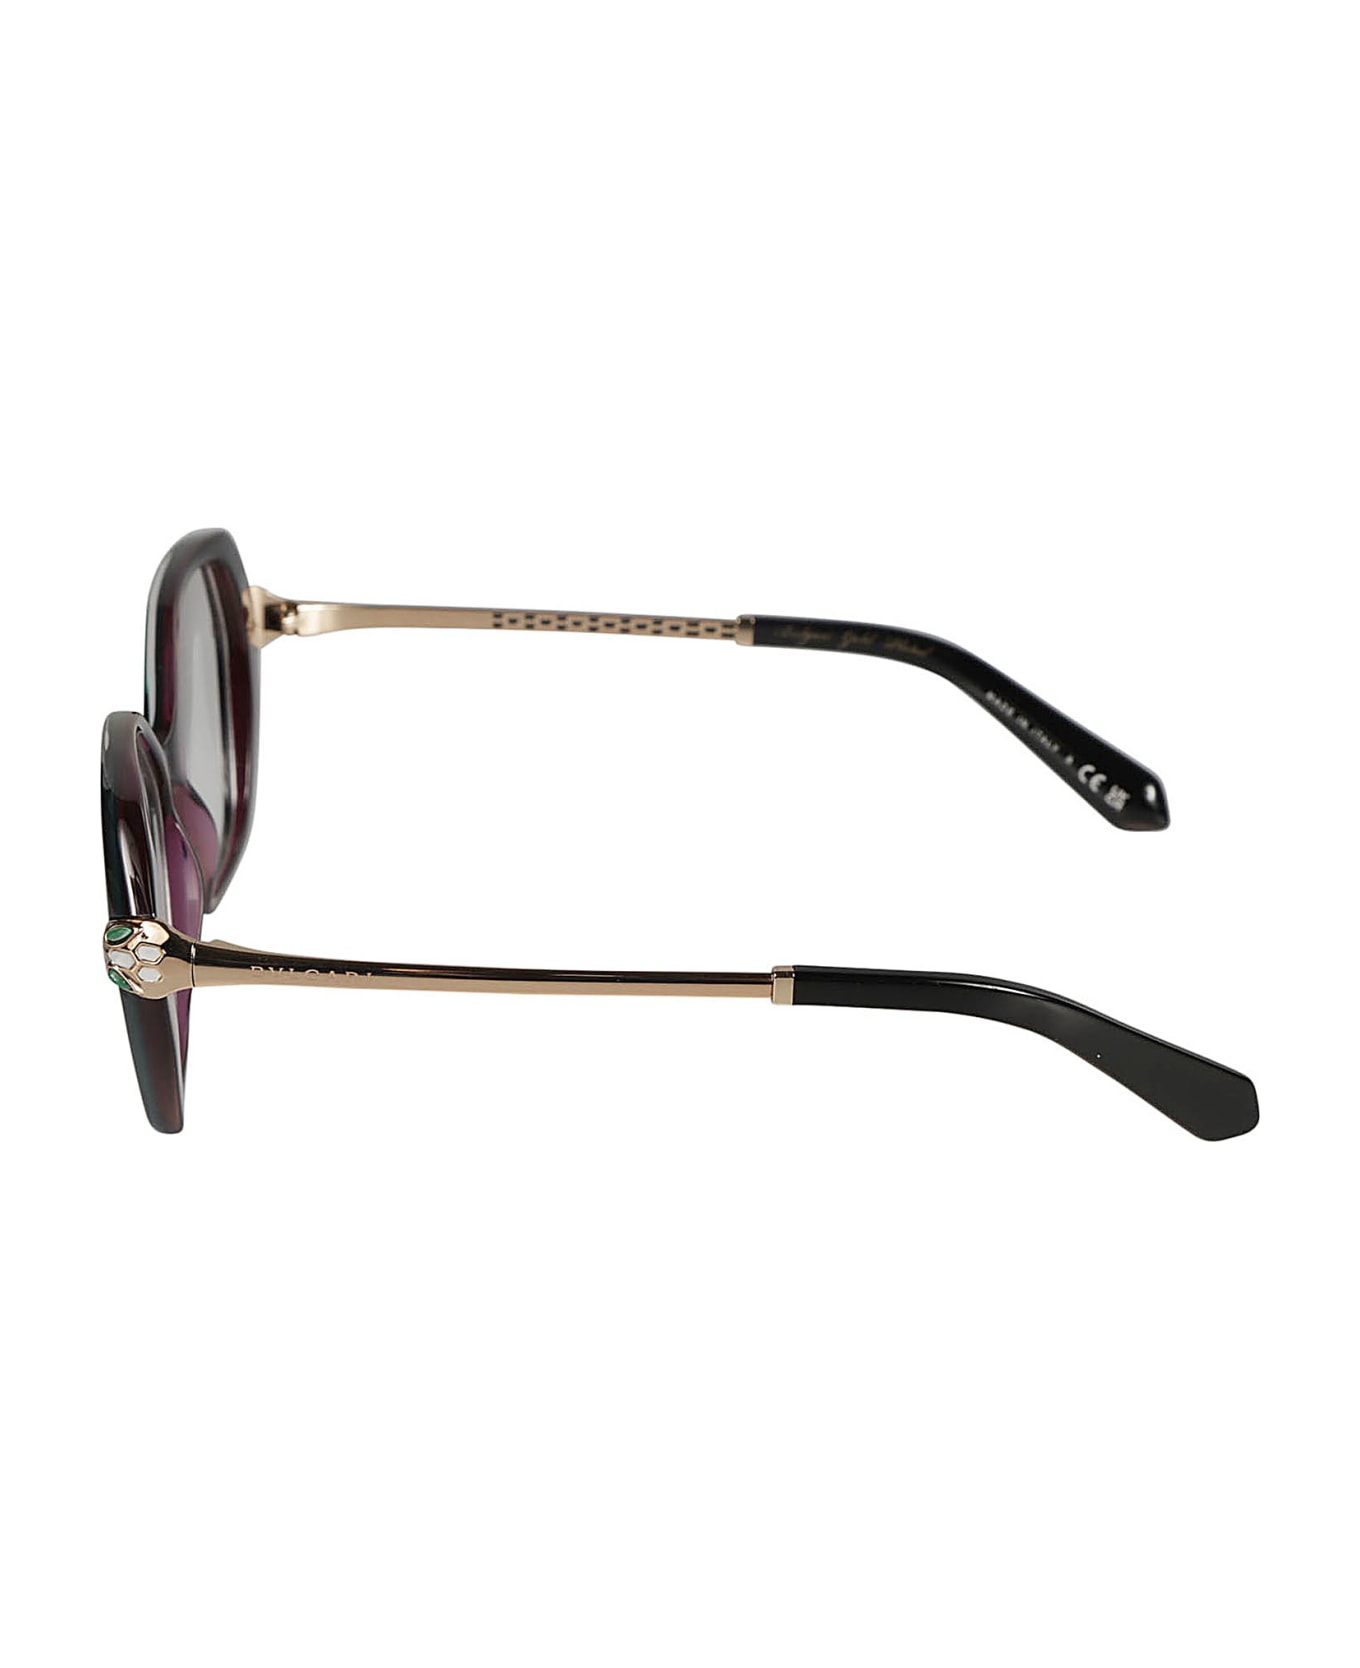 Bulgari Rectangular Rim Glasses - 5485